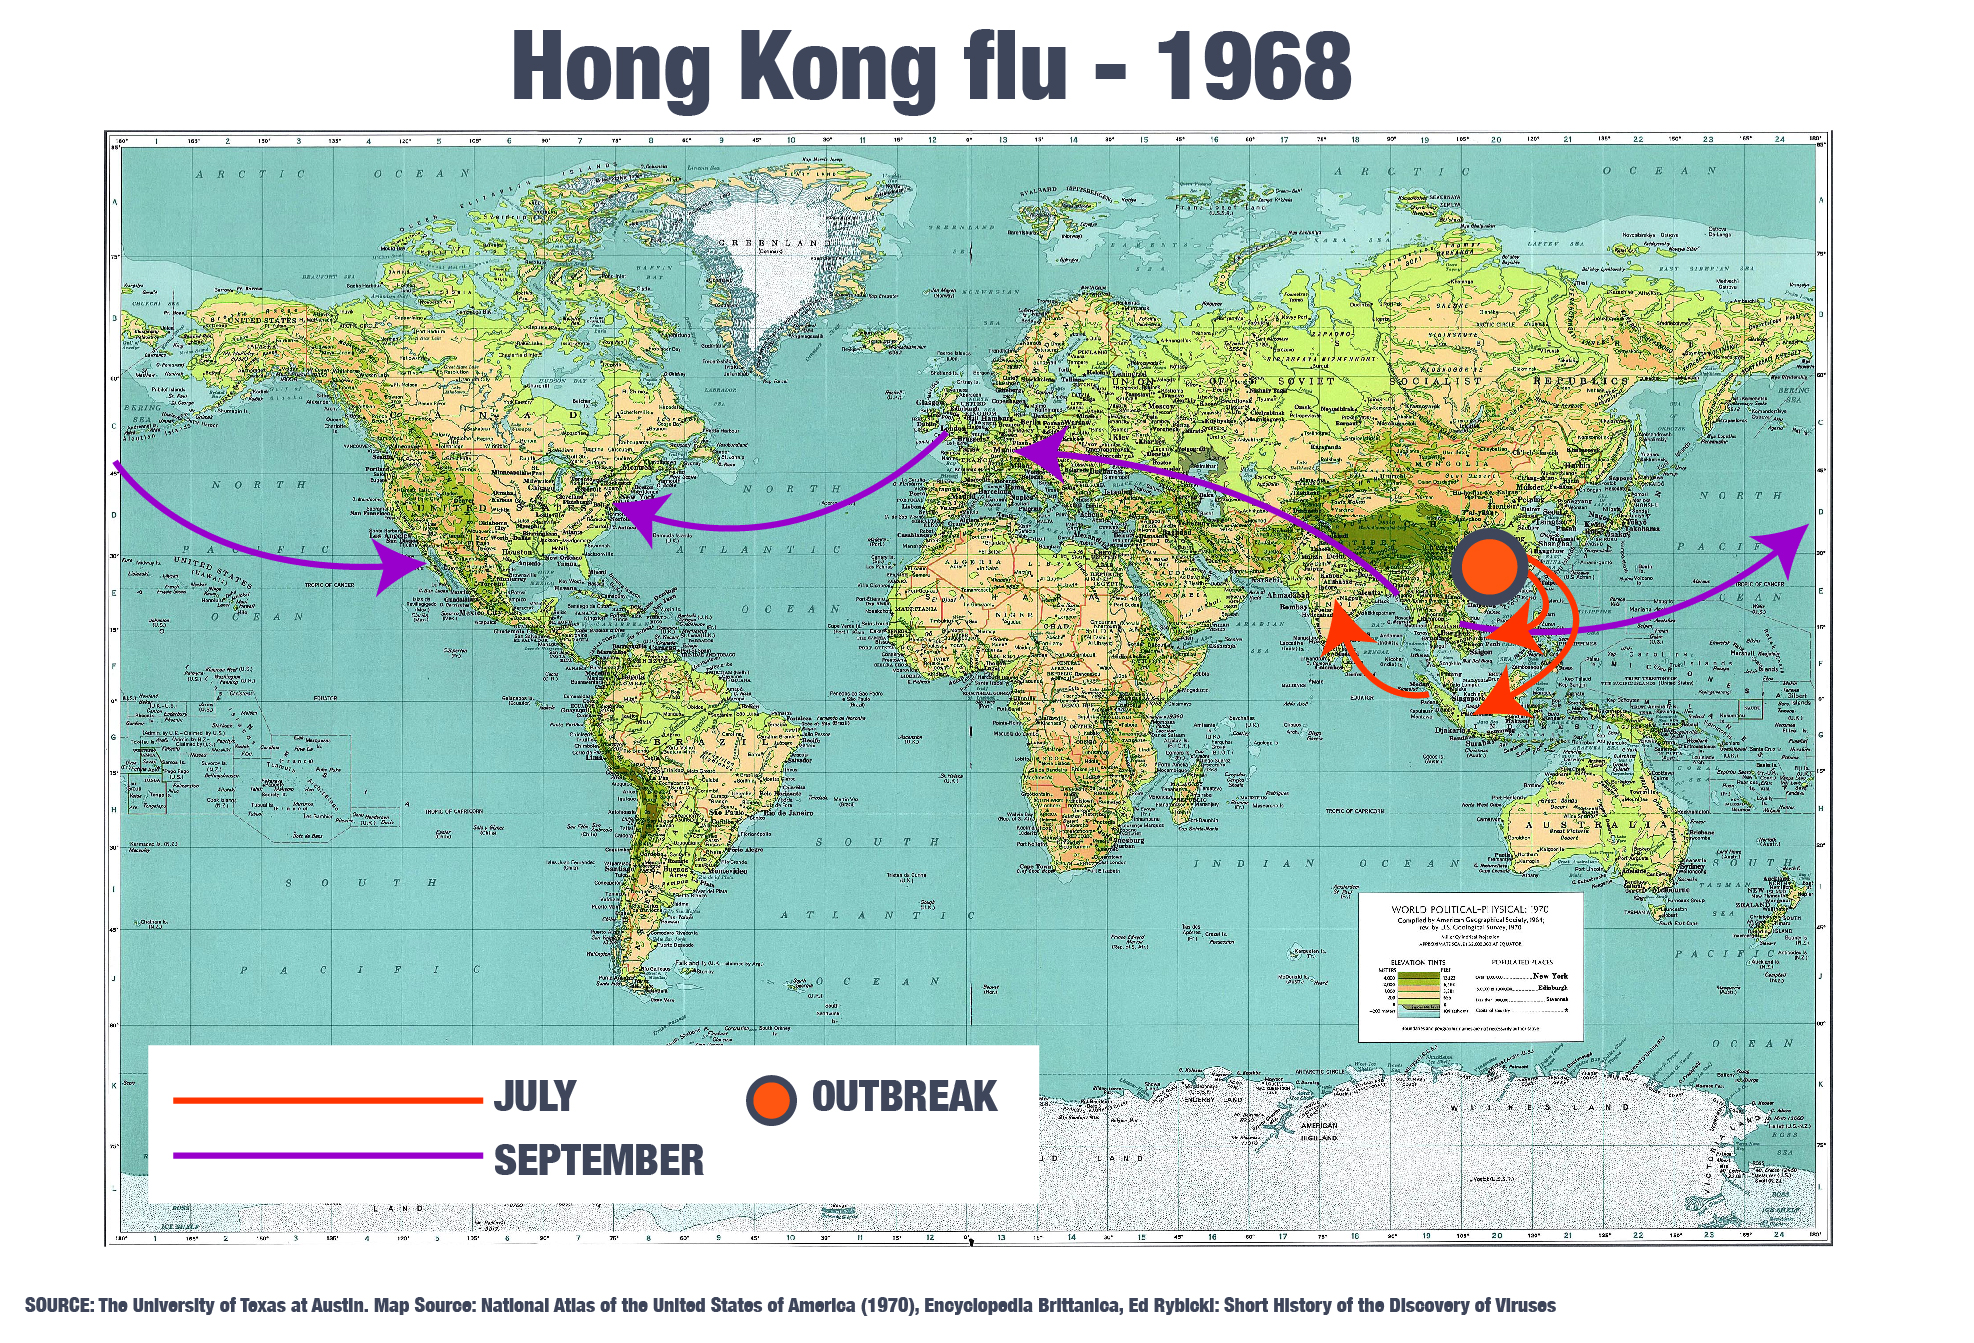 DO NOT USE: INTERACTIVE: Hong Kong flu 1968 map